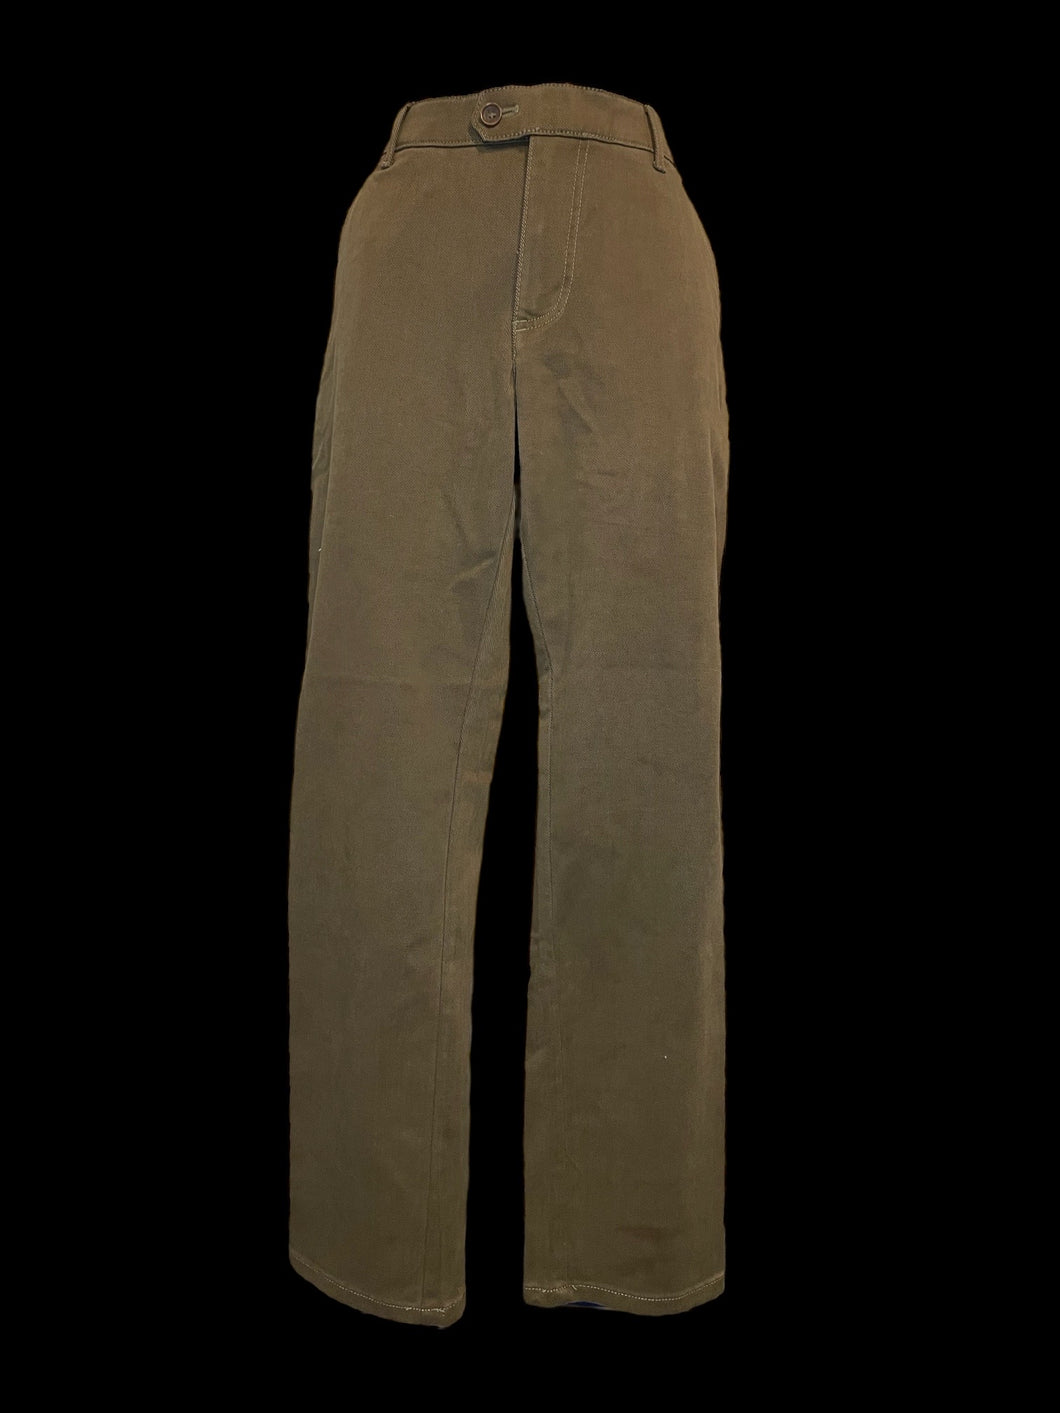 L NWT Dark brown mid rise straight leg pants w/ pockets, belt loops, & button/clasp/zipper closure